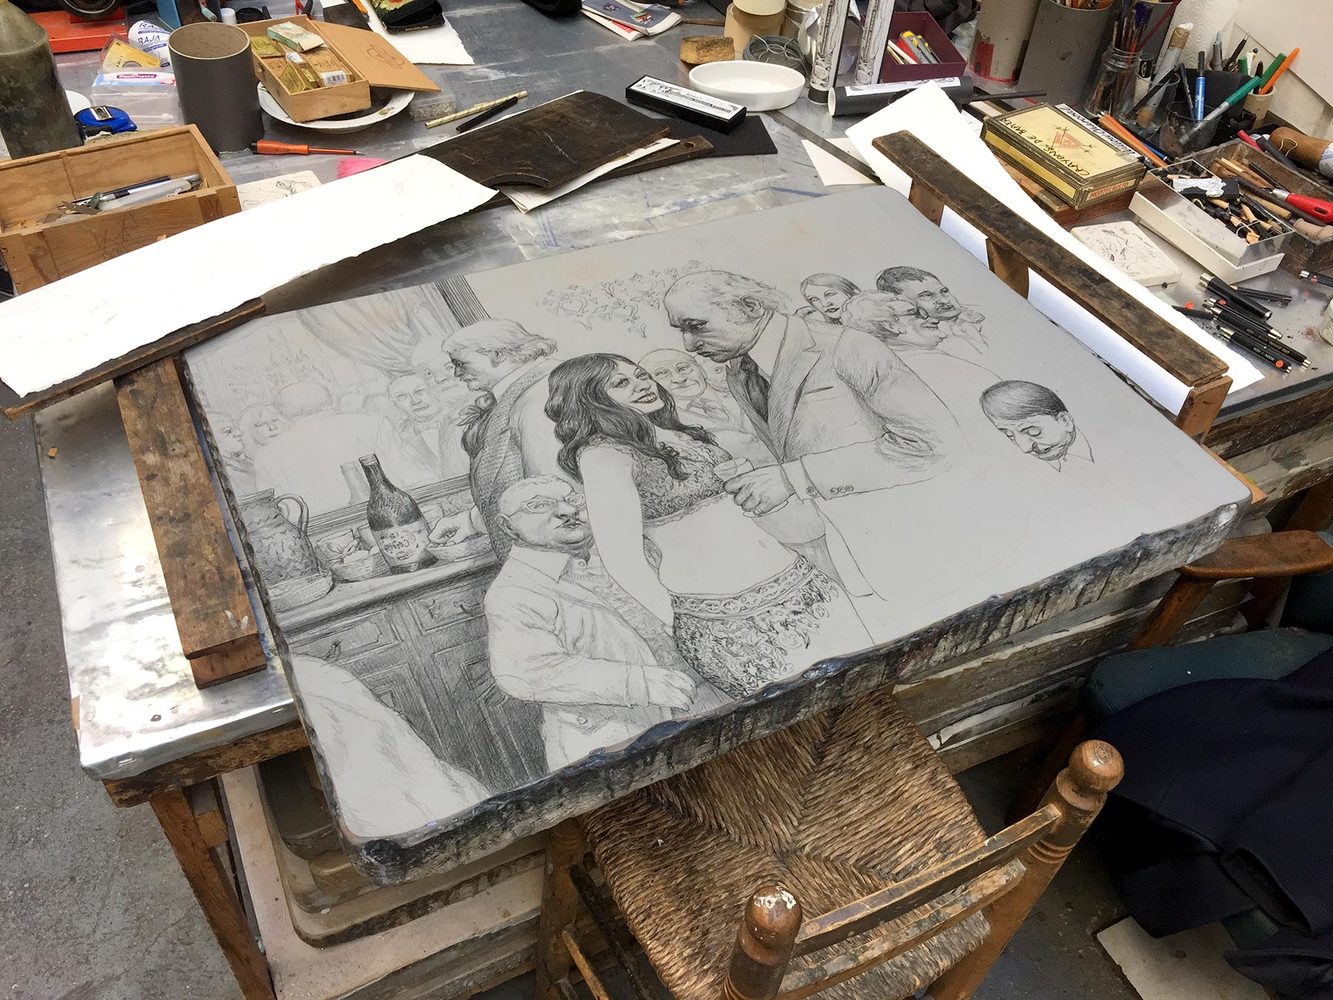 Nicolas de CRECY - Party, 2018 -  Le 23 février 2018, Nicolas de Crécy est à l'atelier Bramsen pour réaliser une grande lithographie sur pierre. Il s'est inspiré d'un ancien dessin pour cette composition intitulé "Party"